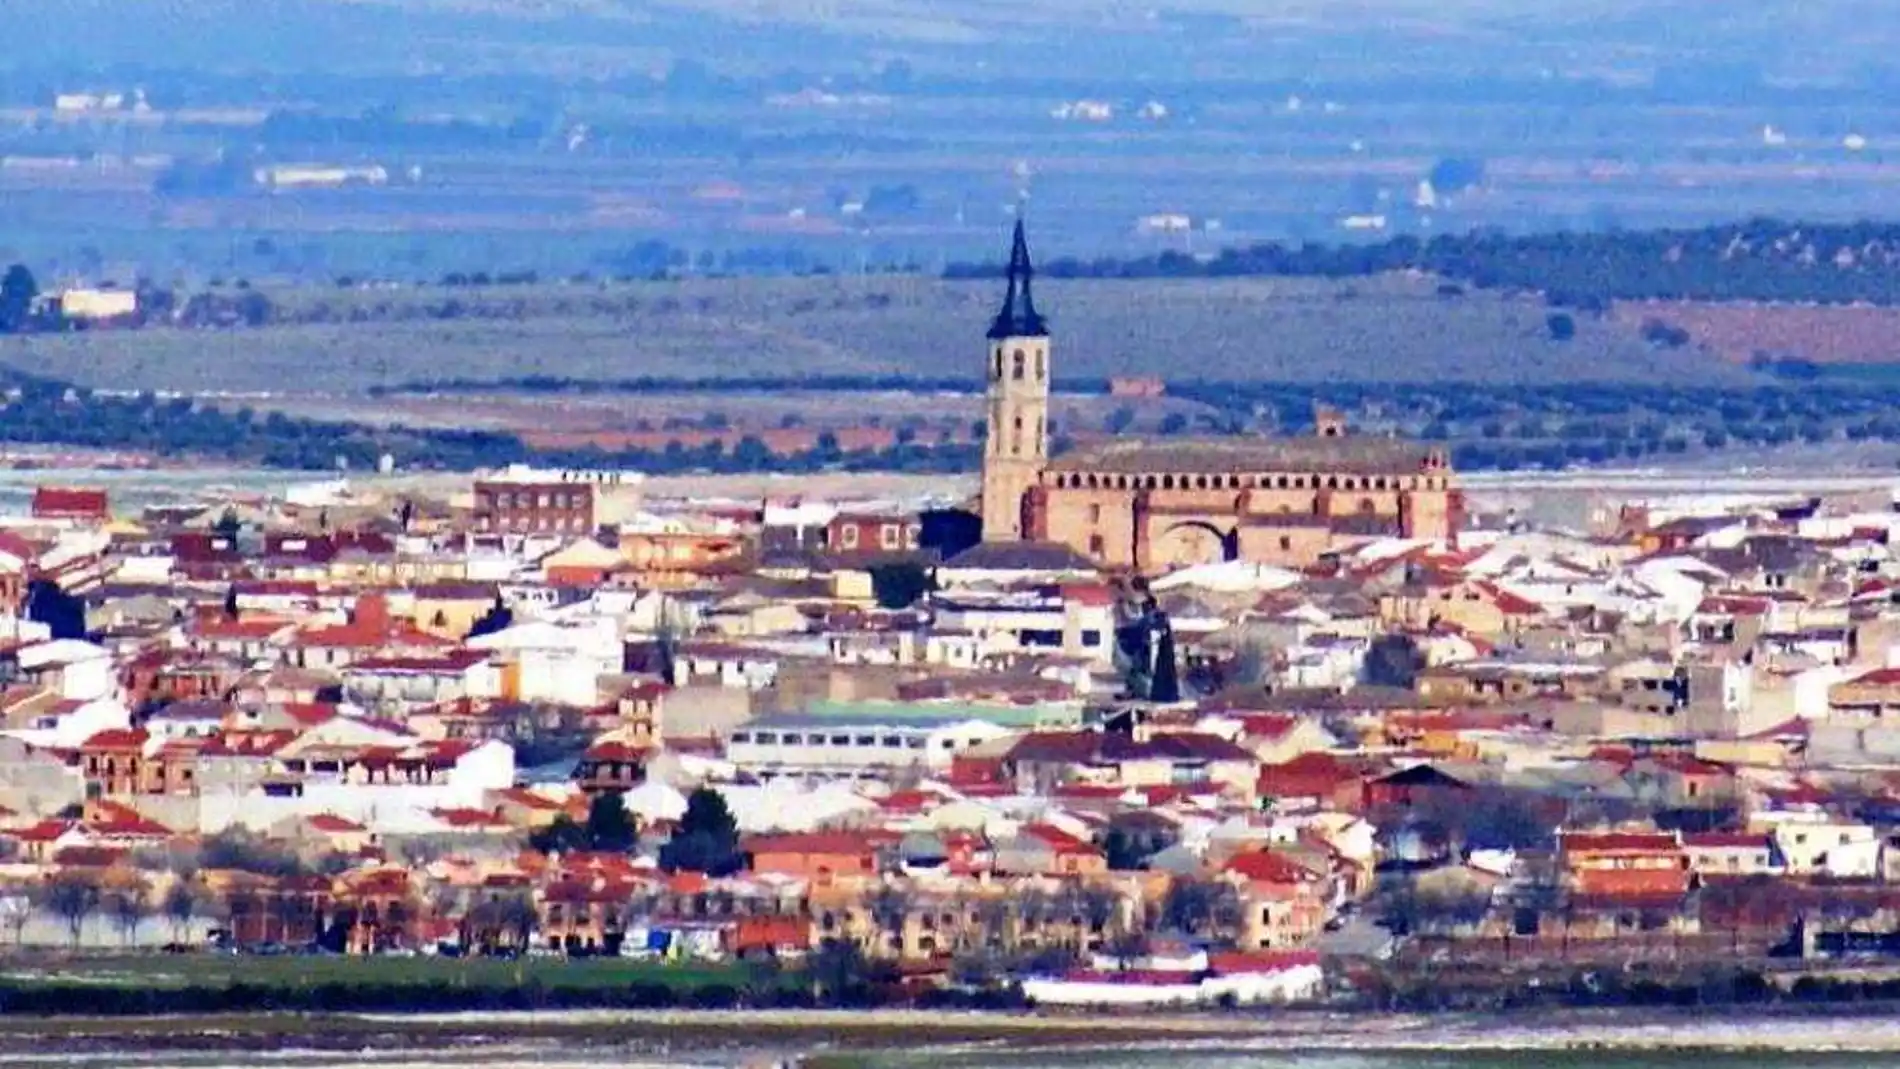 El municipio de La Solana se encuentra actualmente confinado